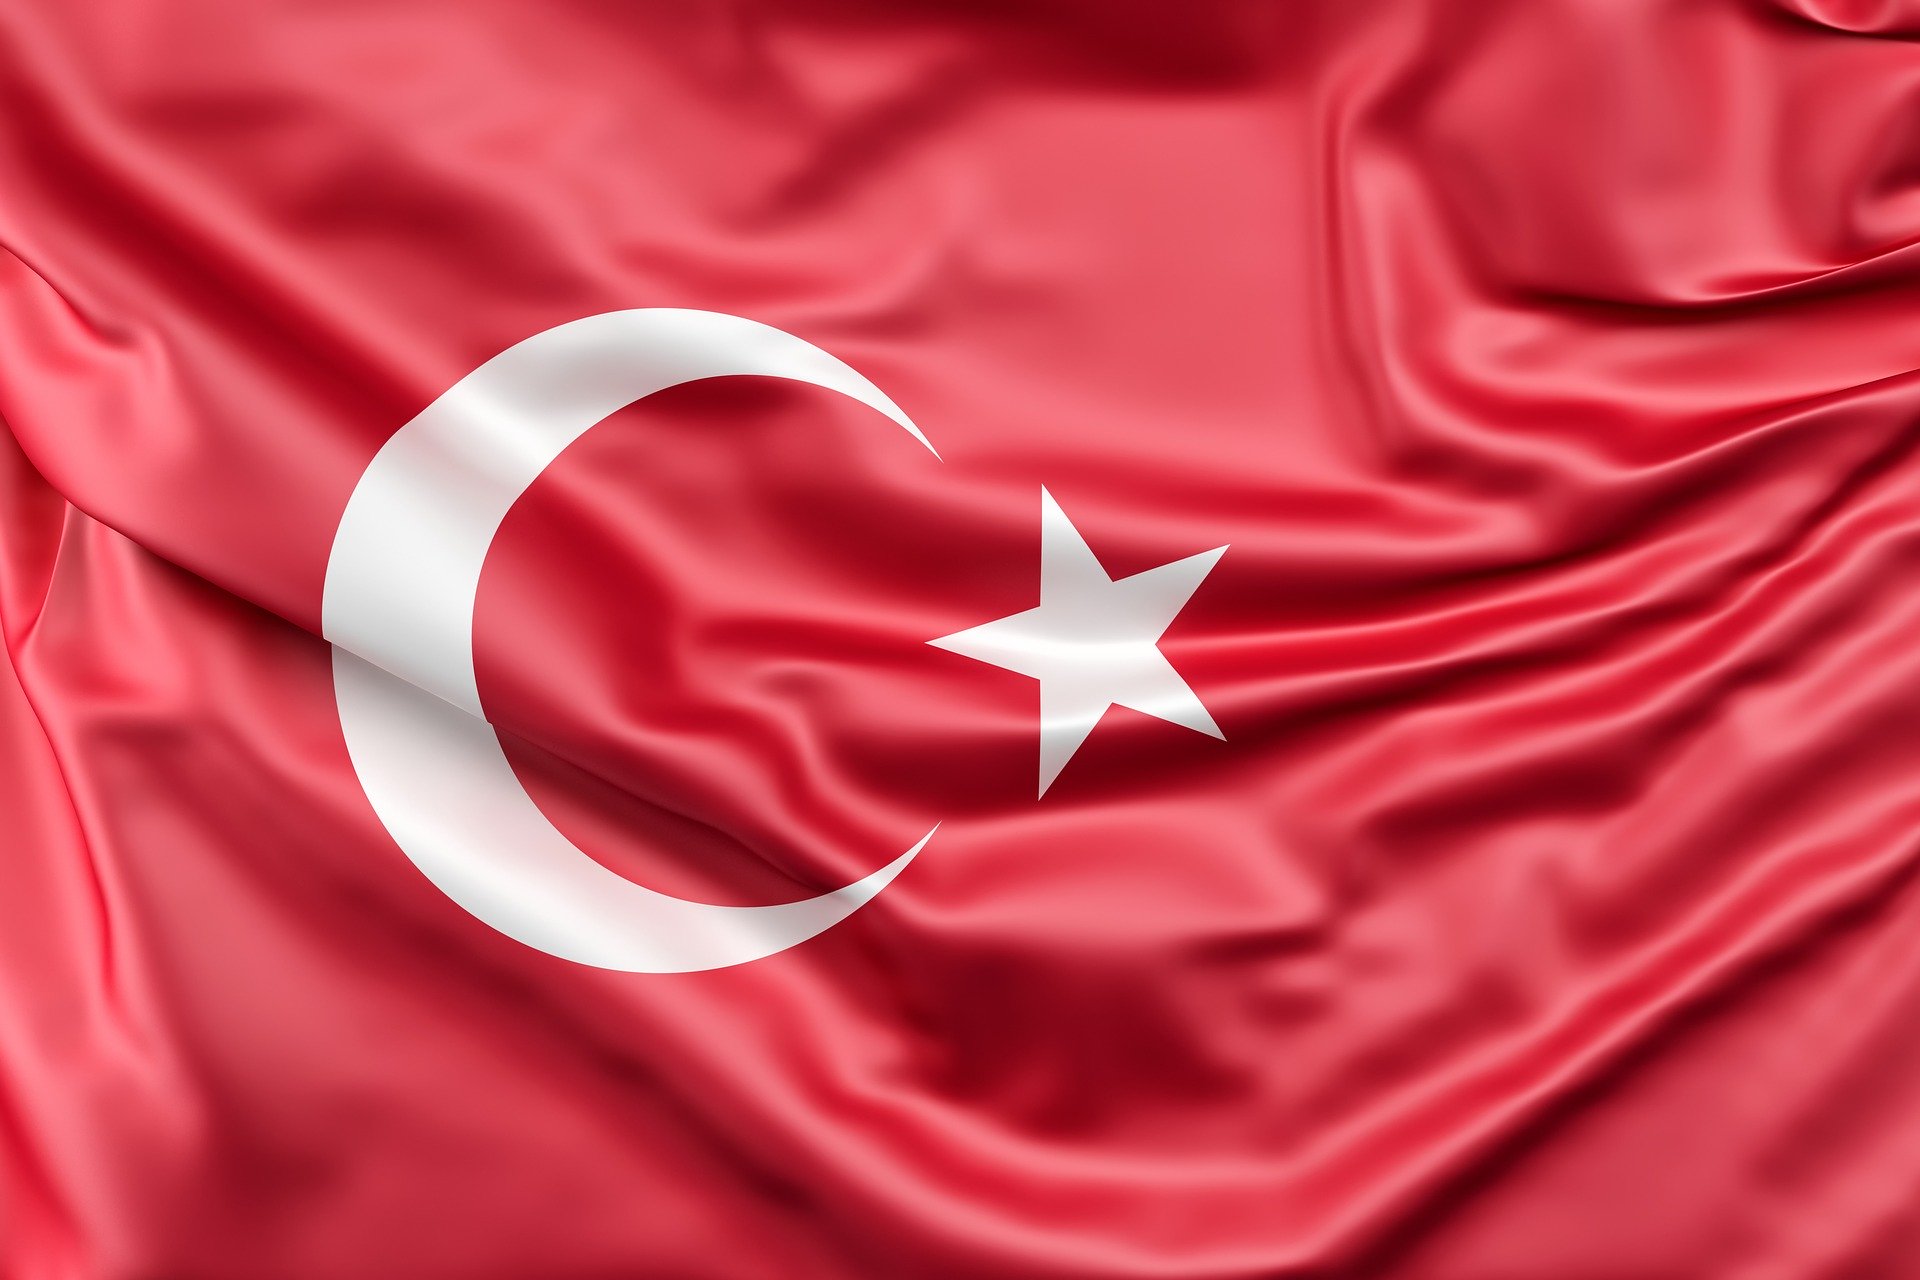 Rottame: ancora in calo le importazioni in Turchia – A luglio volumi crollati del 42,9%. Calo a doppia cifra anche per il cumulato dei primi sette mesi